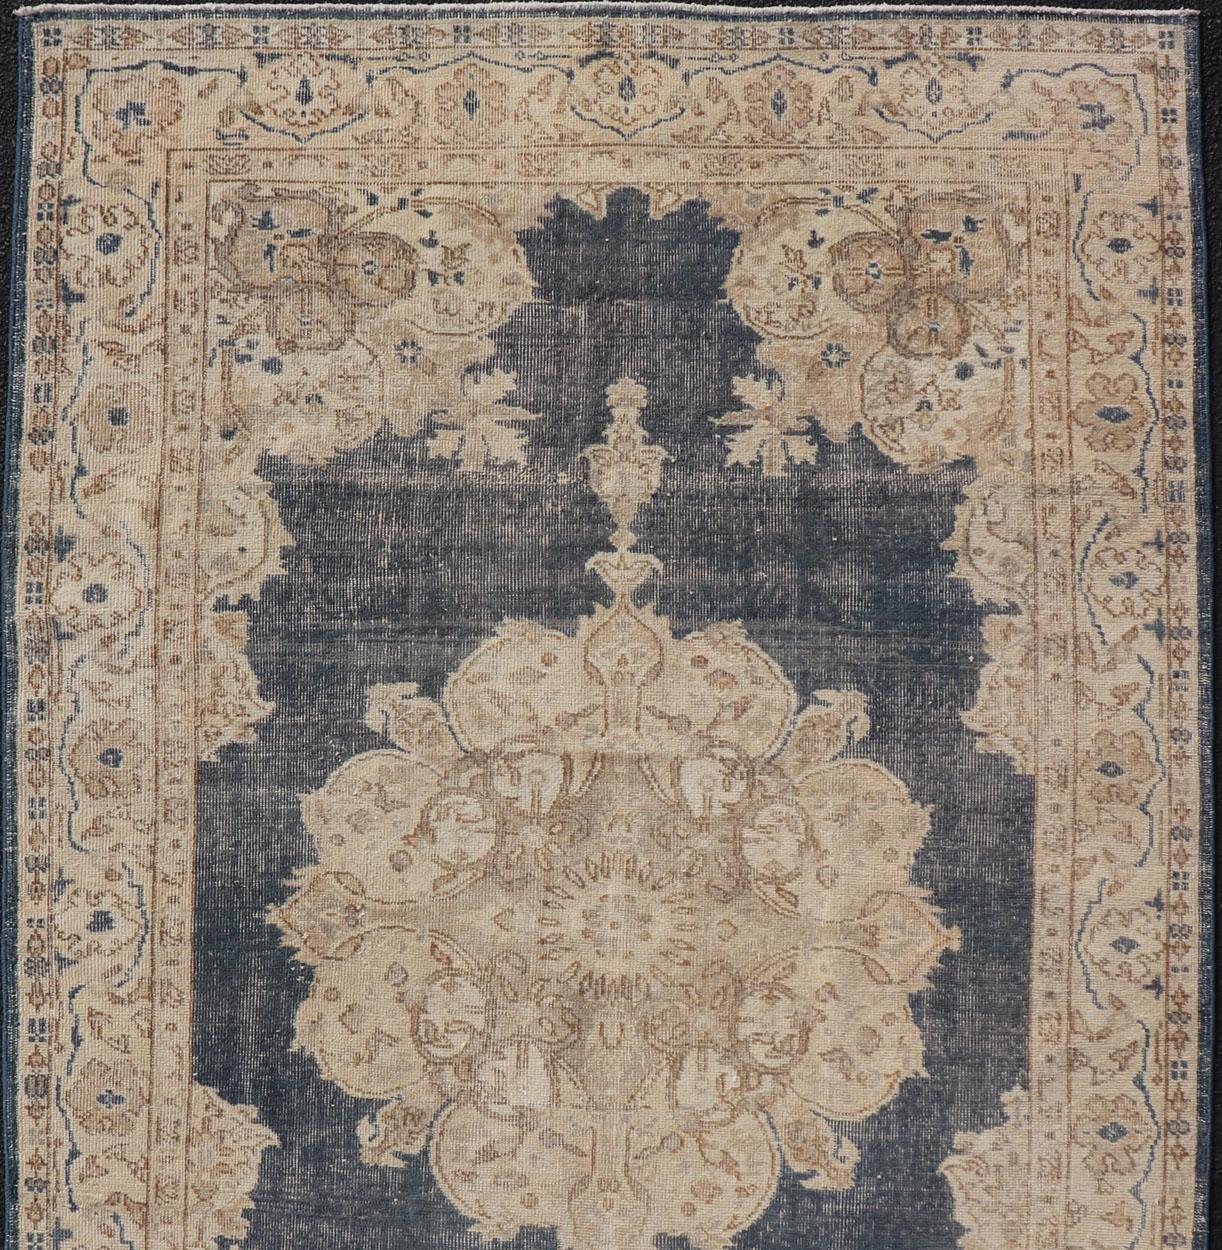 Türkischer Distressed-Teppich im Used-Look mit Blumenmuster in Blau, Tan, Taupe und Creme (Handgeknüpft) im Angebot